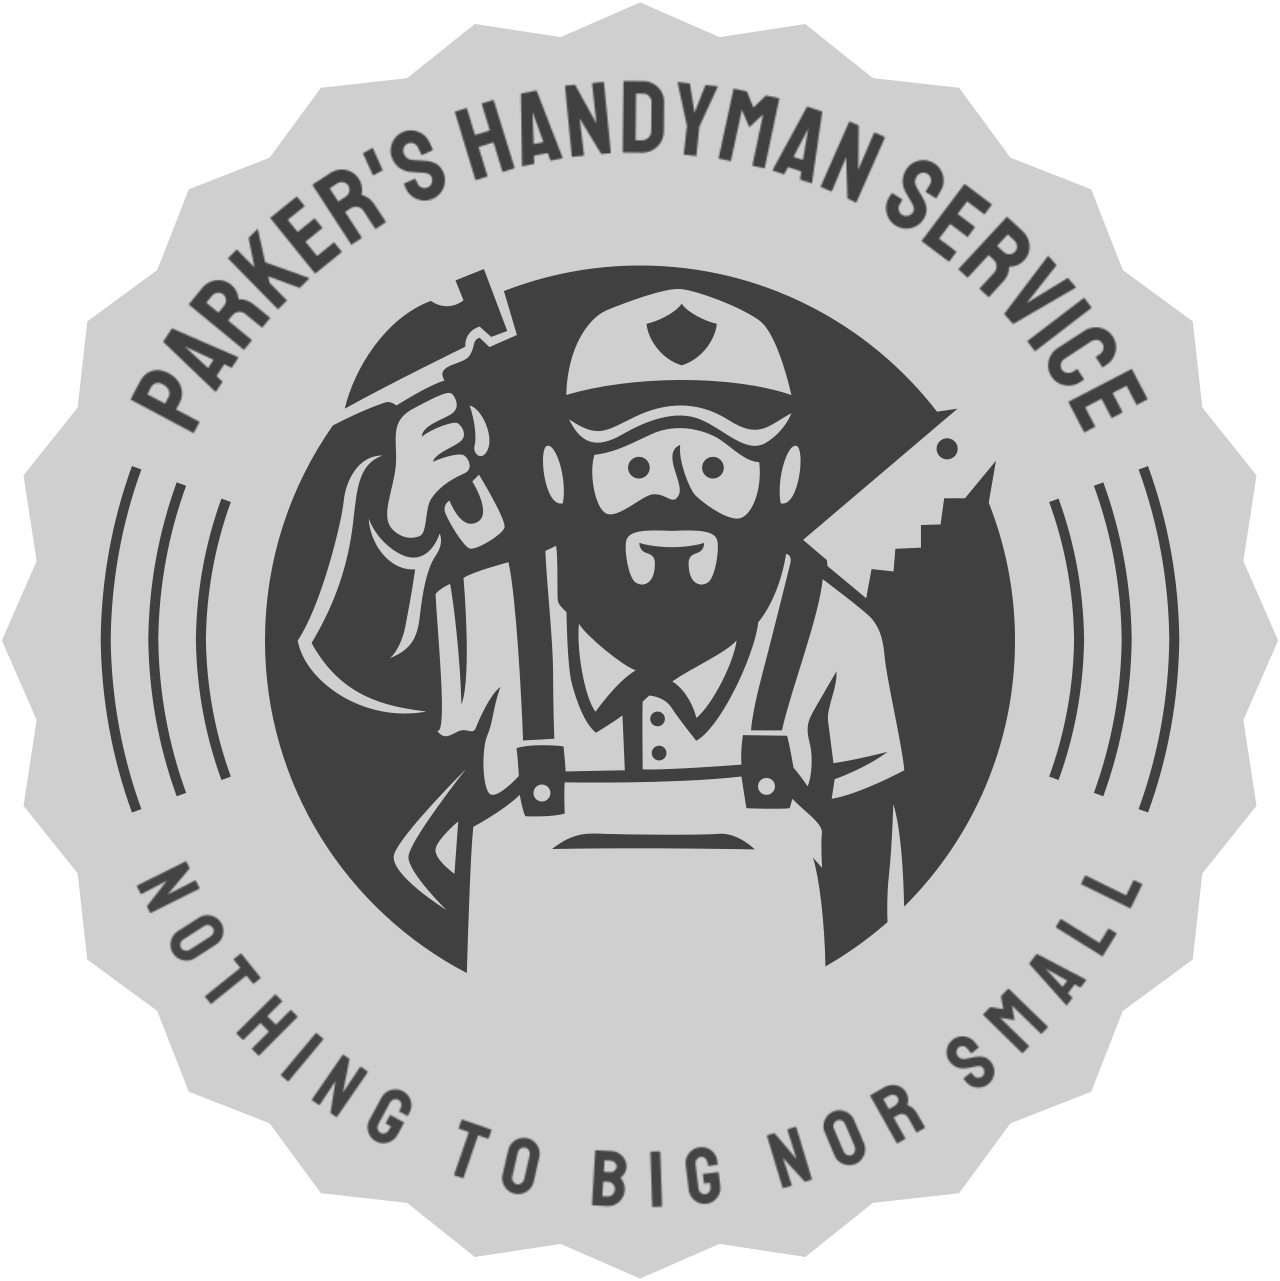 Parker's Handyman Service's logo